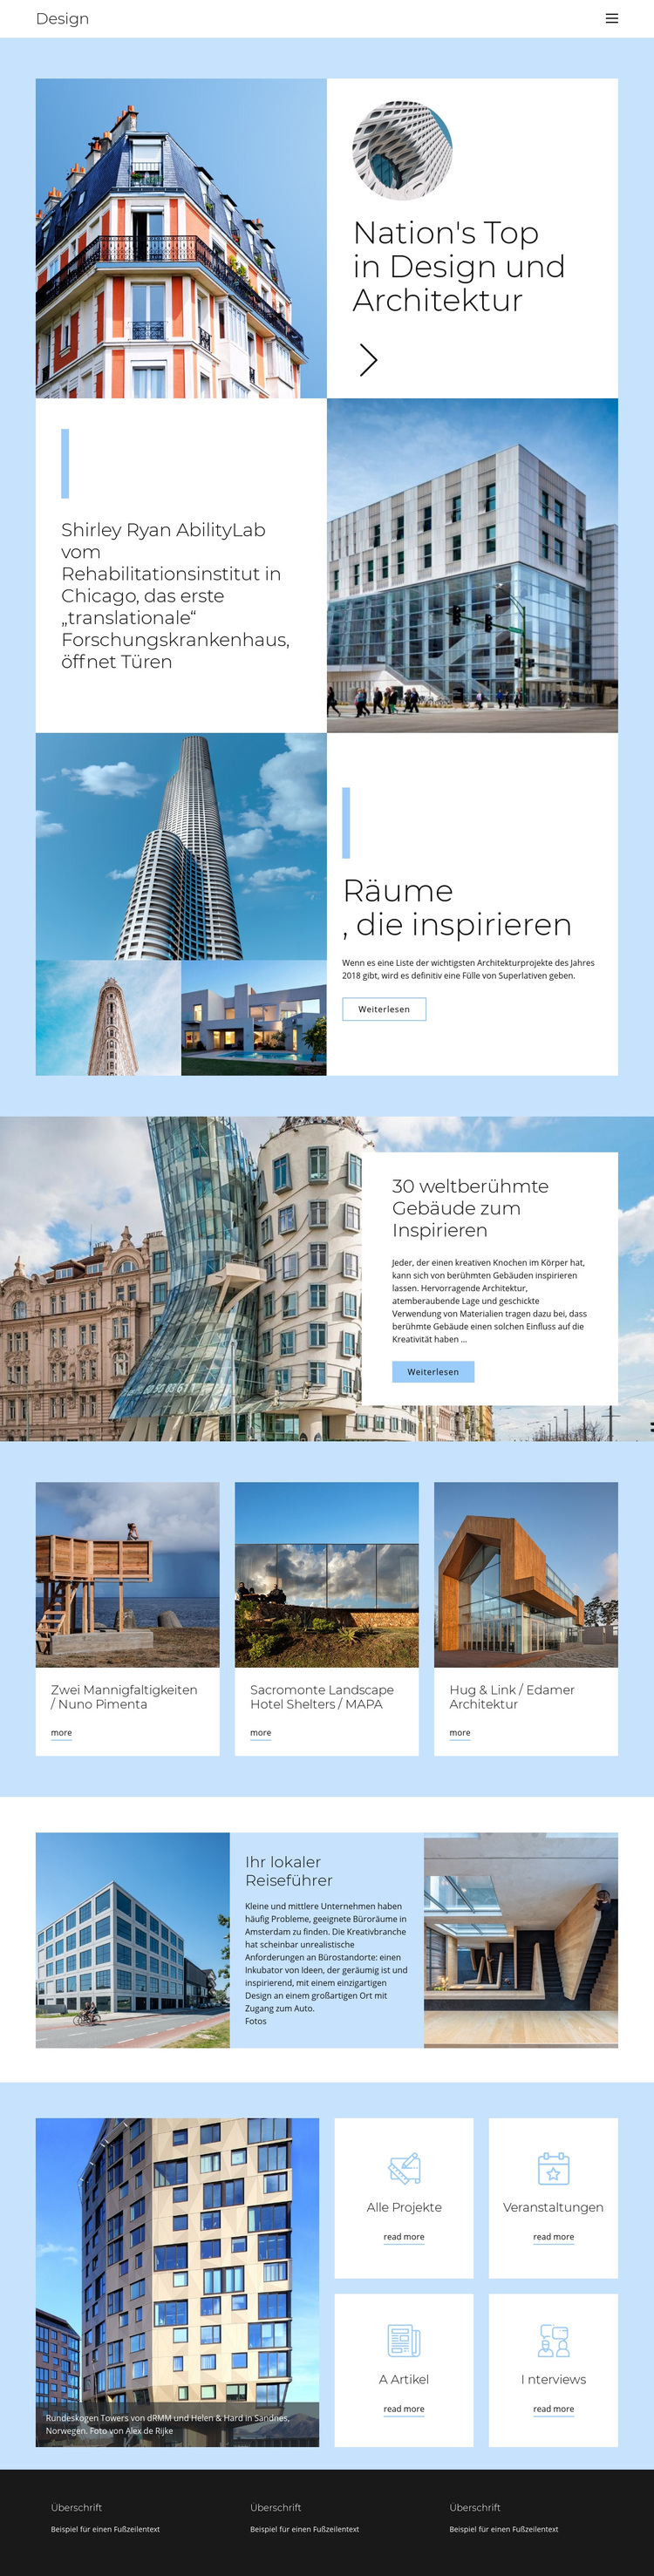 Architektur Stadtführer WordPress-Theme